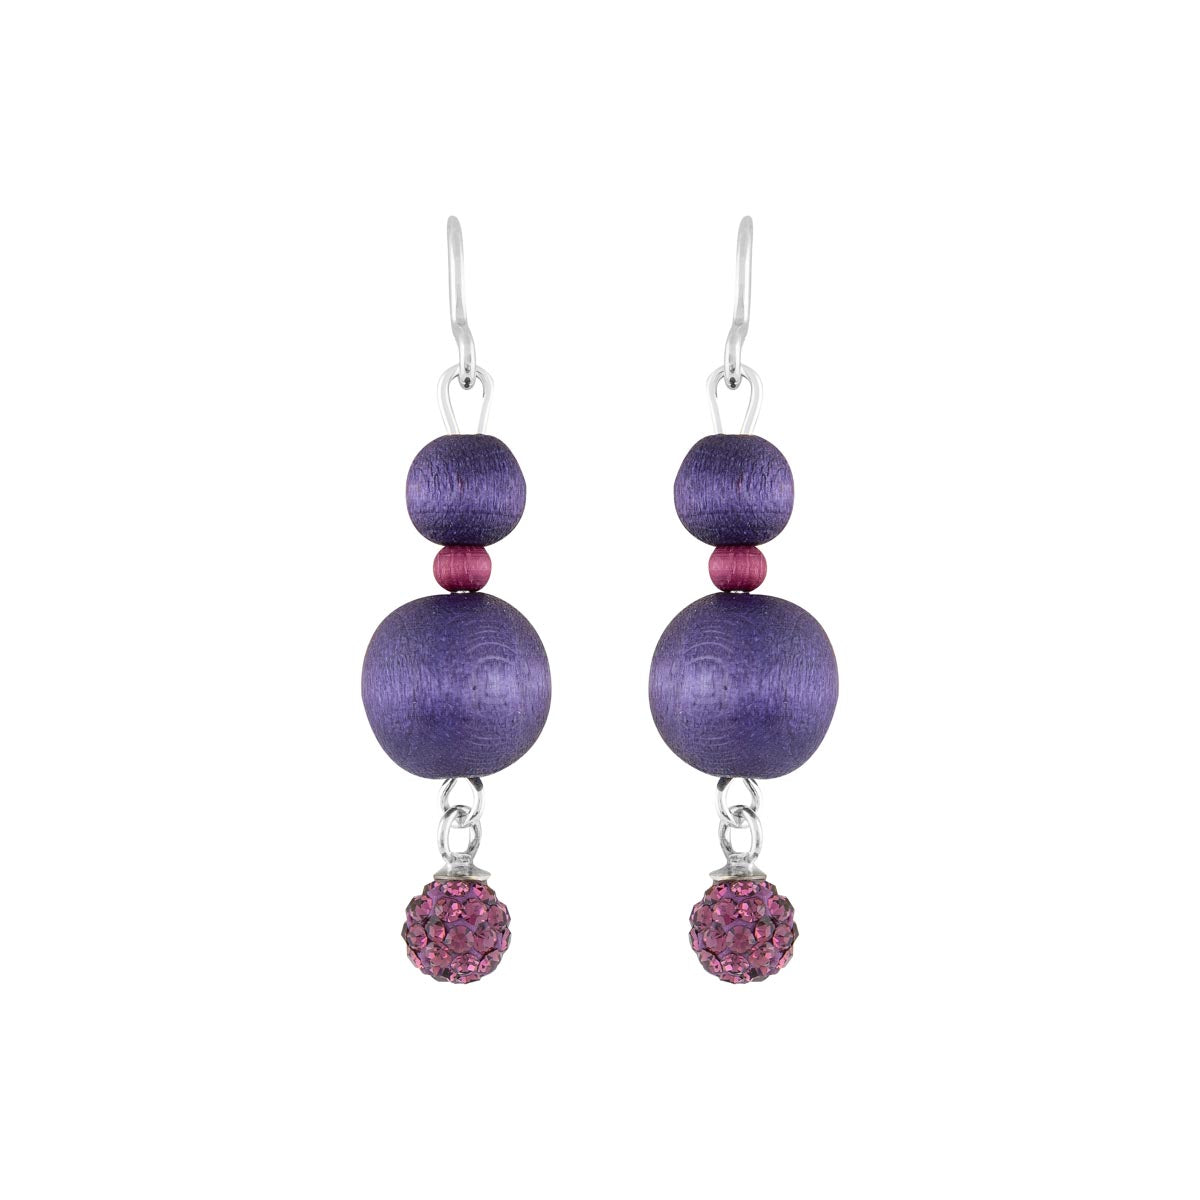 Tuike earrings, dark purple